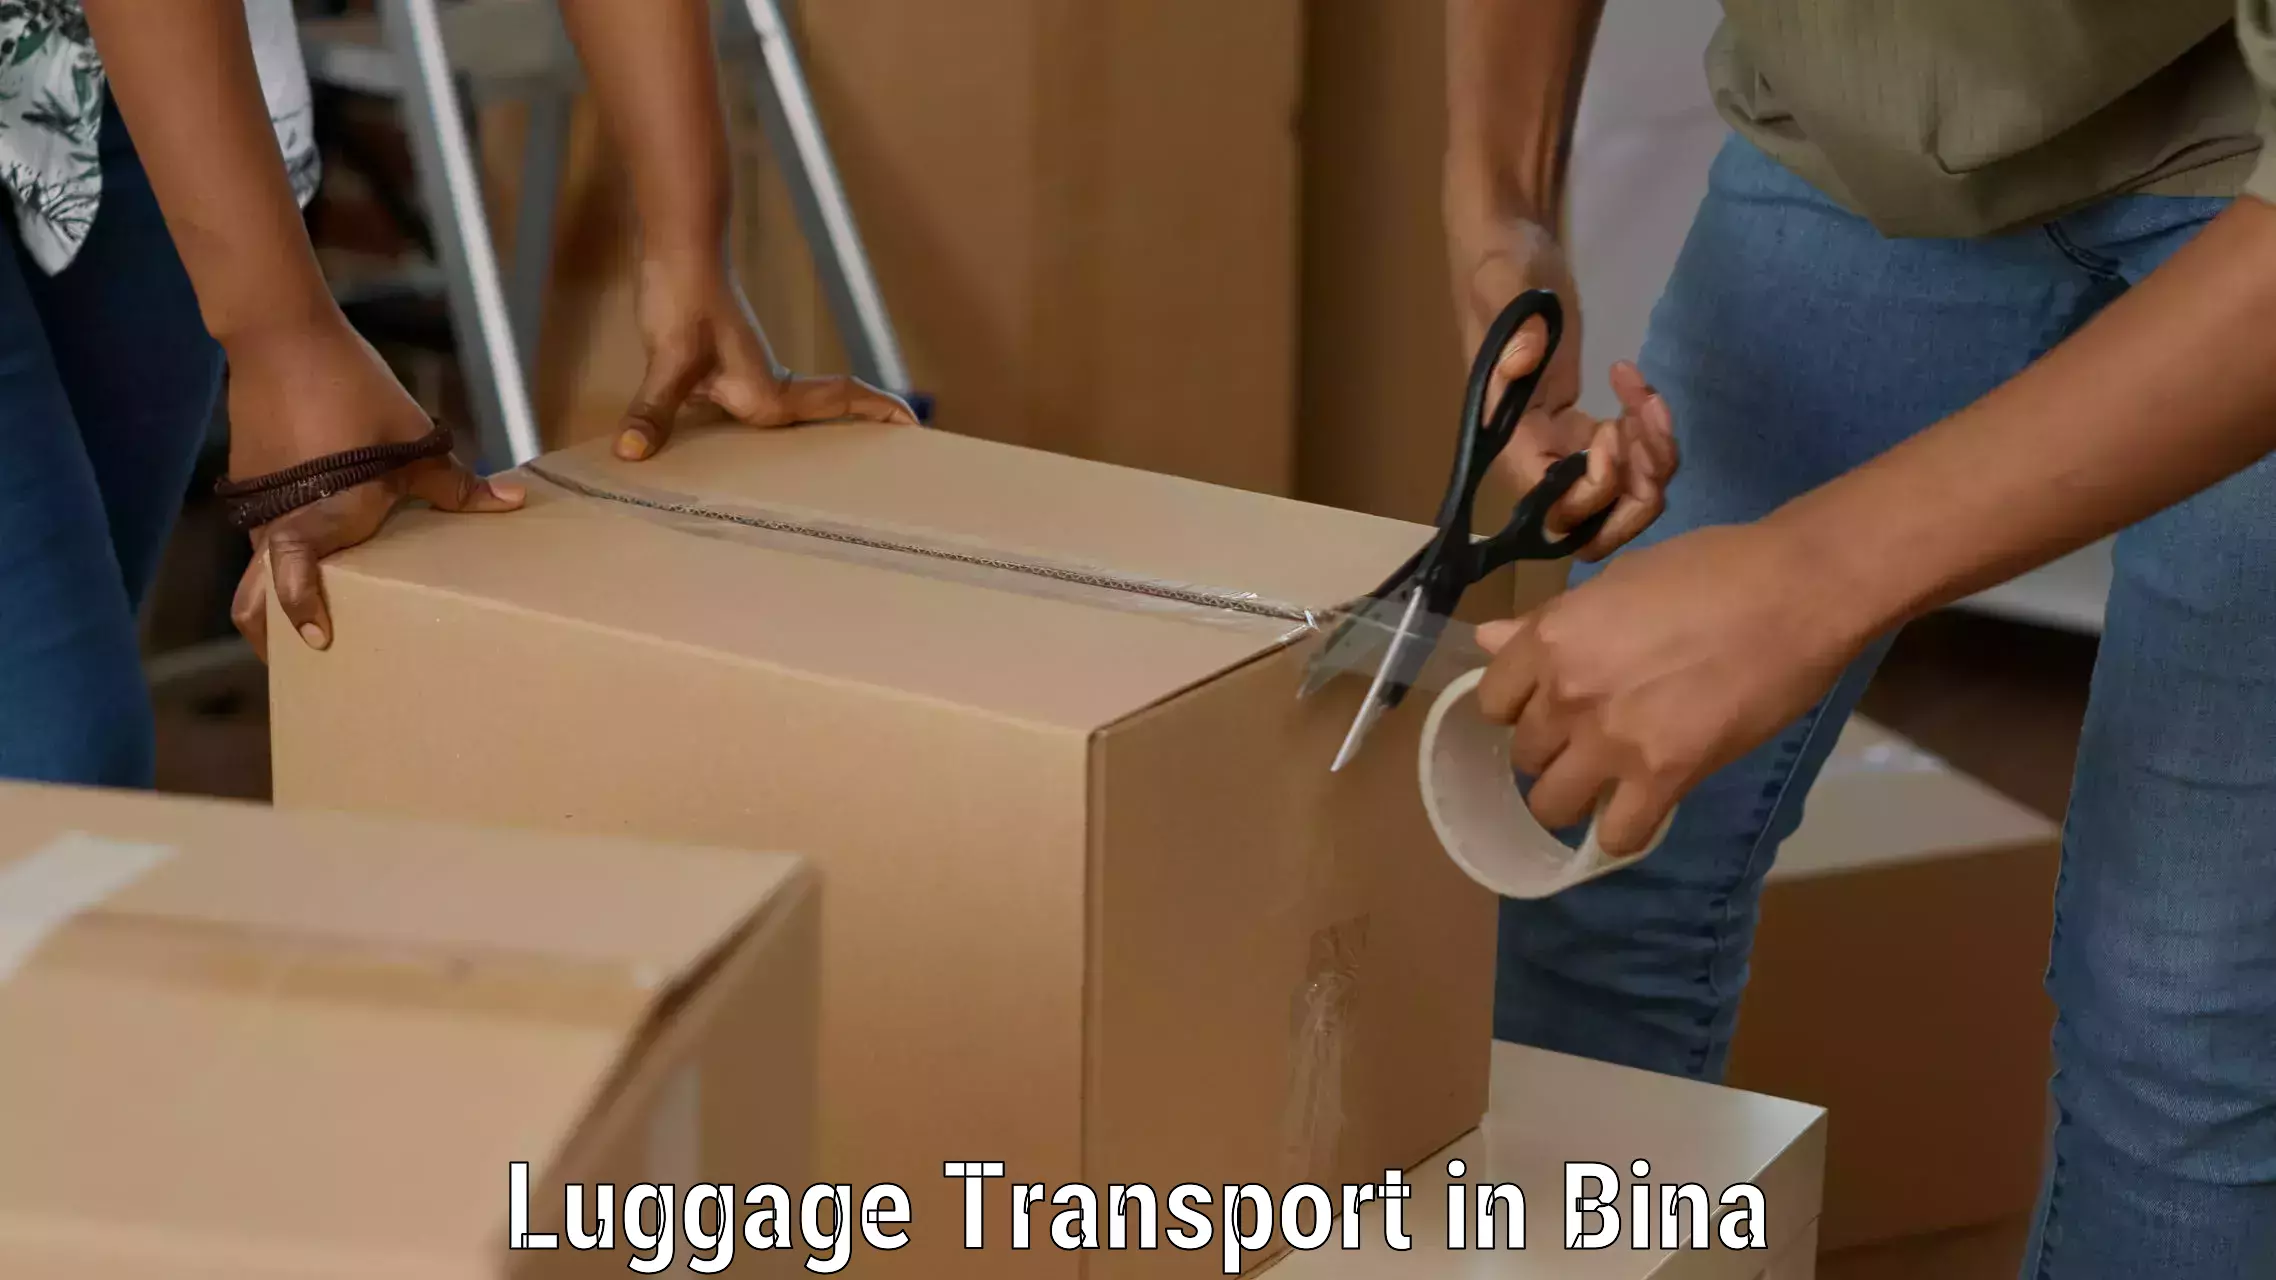 Luggage shipping estimate in Bina